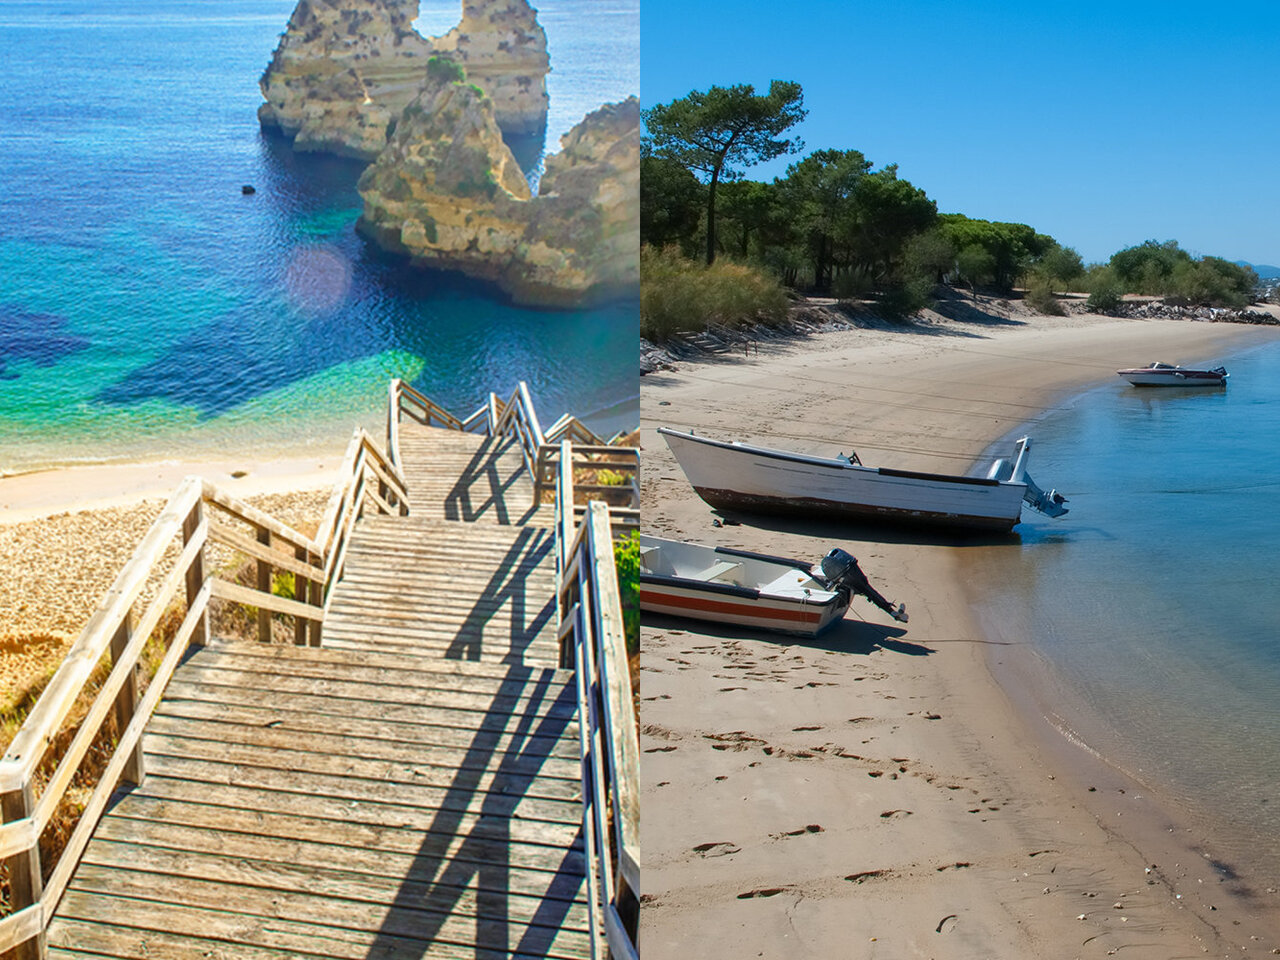 Portugal, Algarve: conheça um dos destinos mais bonitos da Europa!